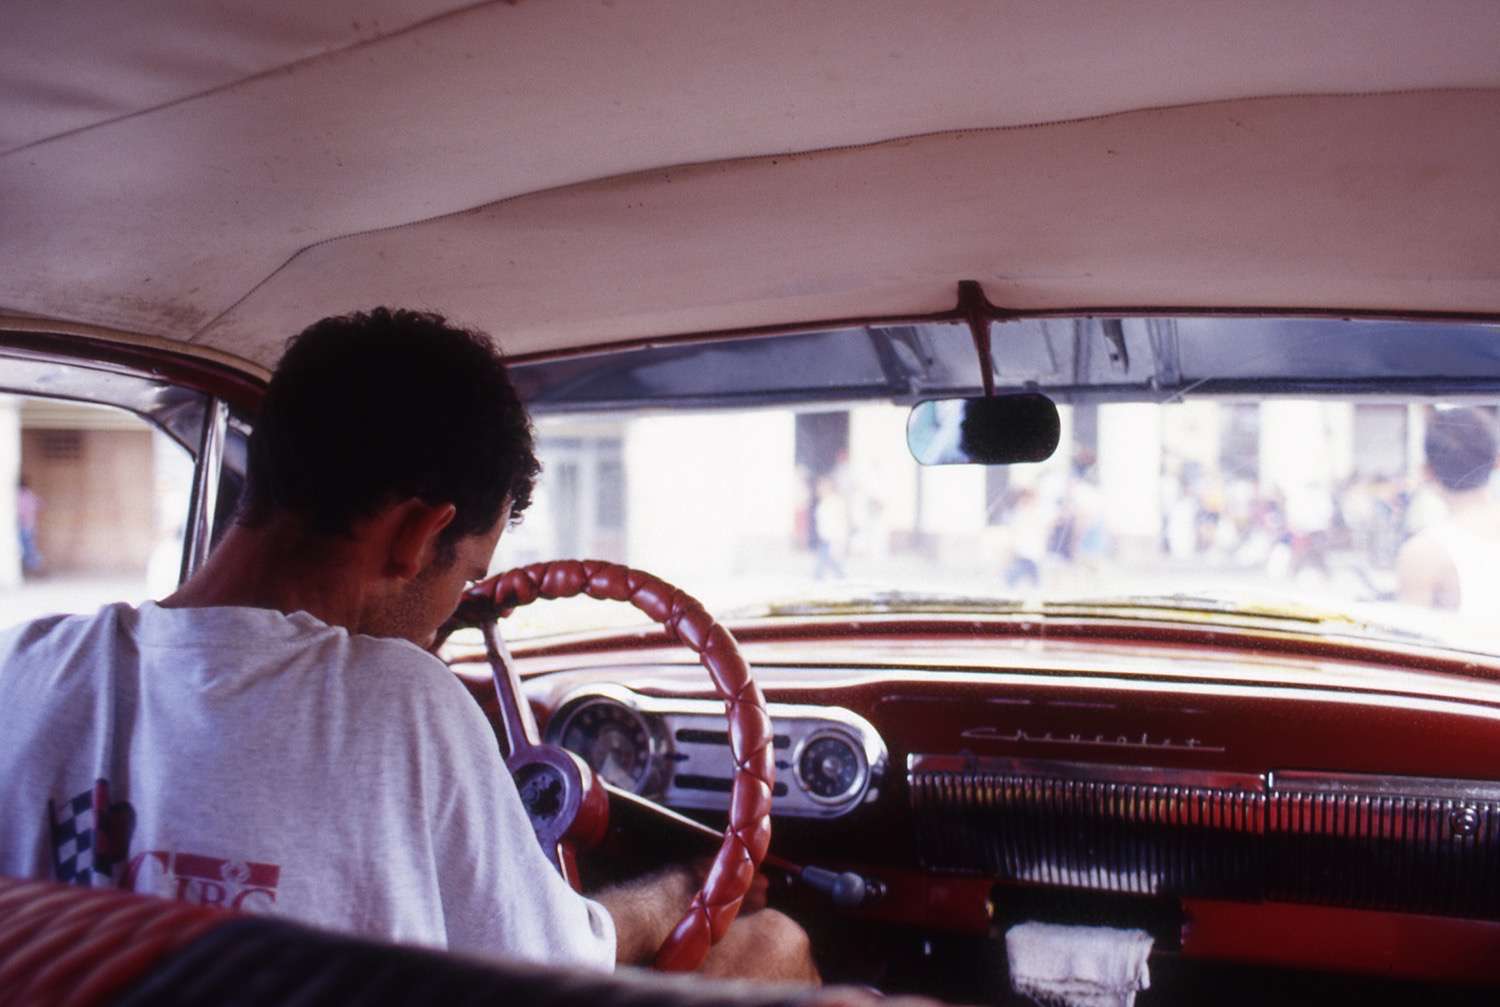 Cuba_man-in-car-Cuba021-copy.jpg